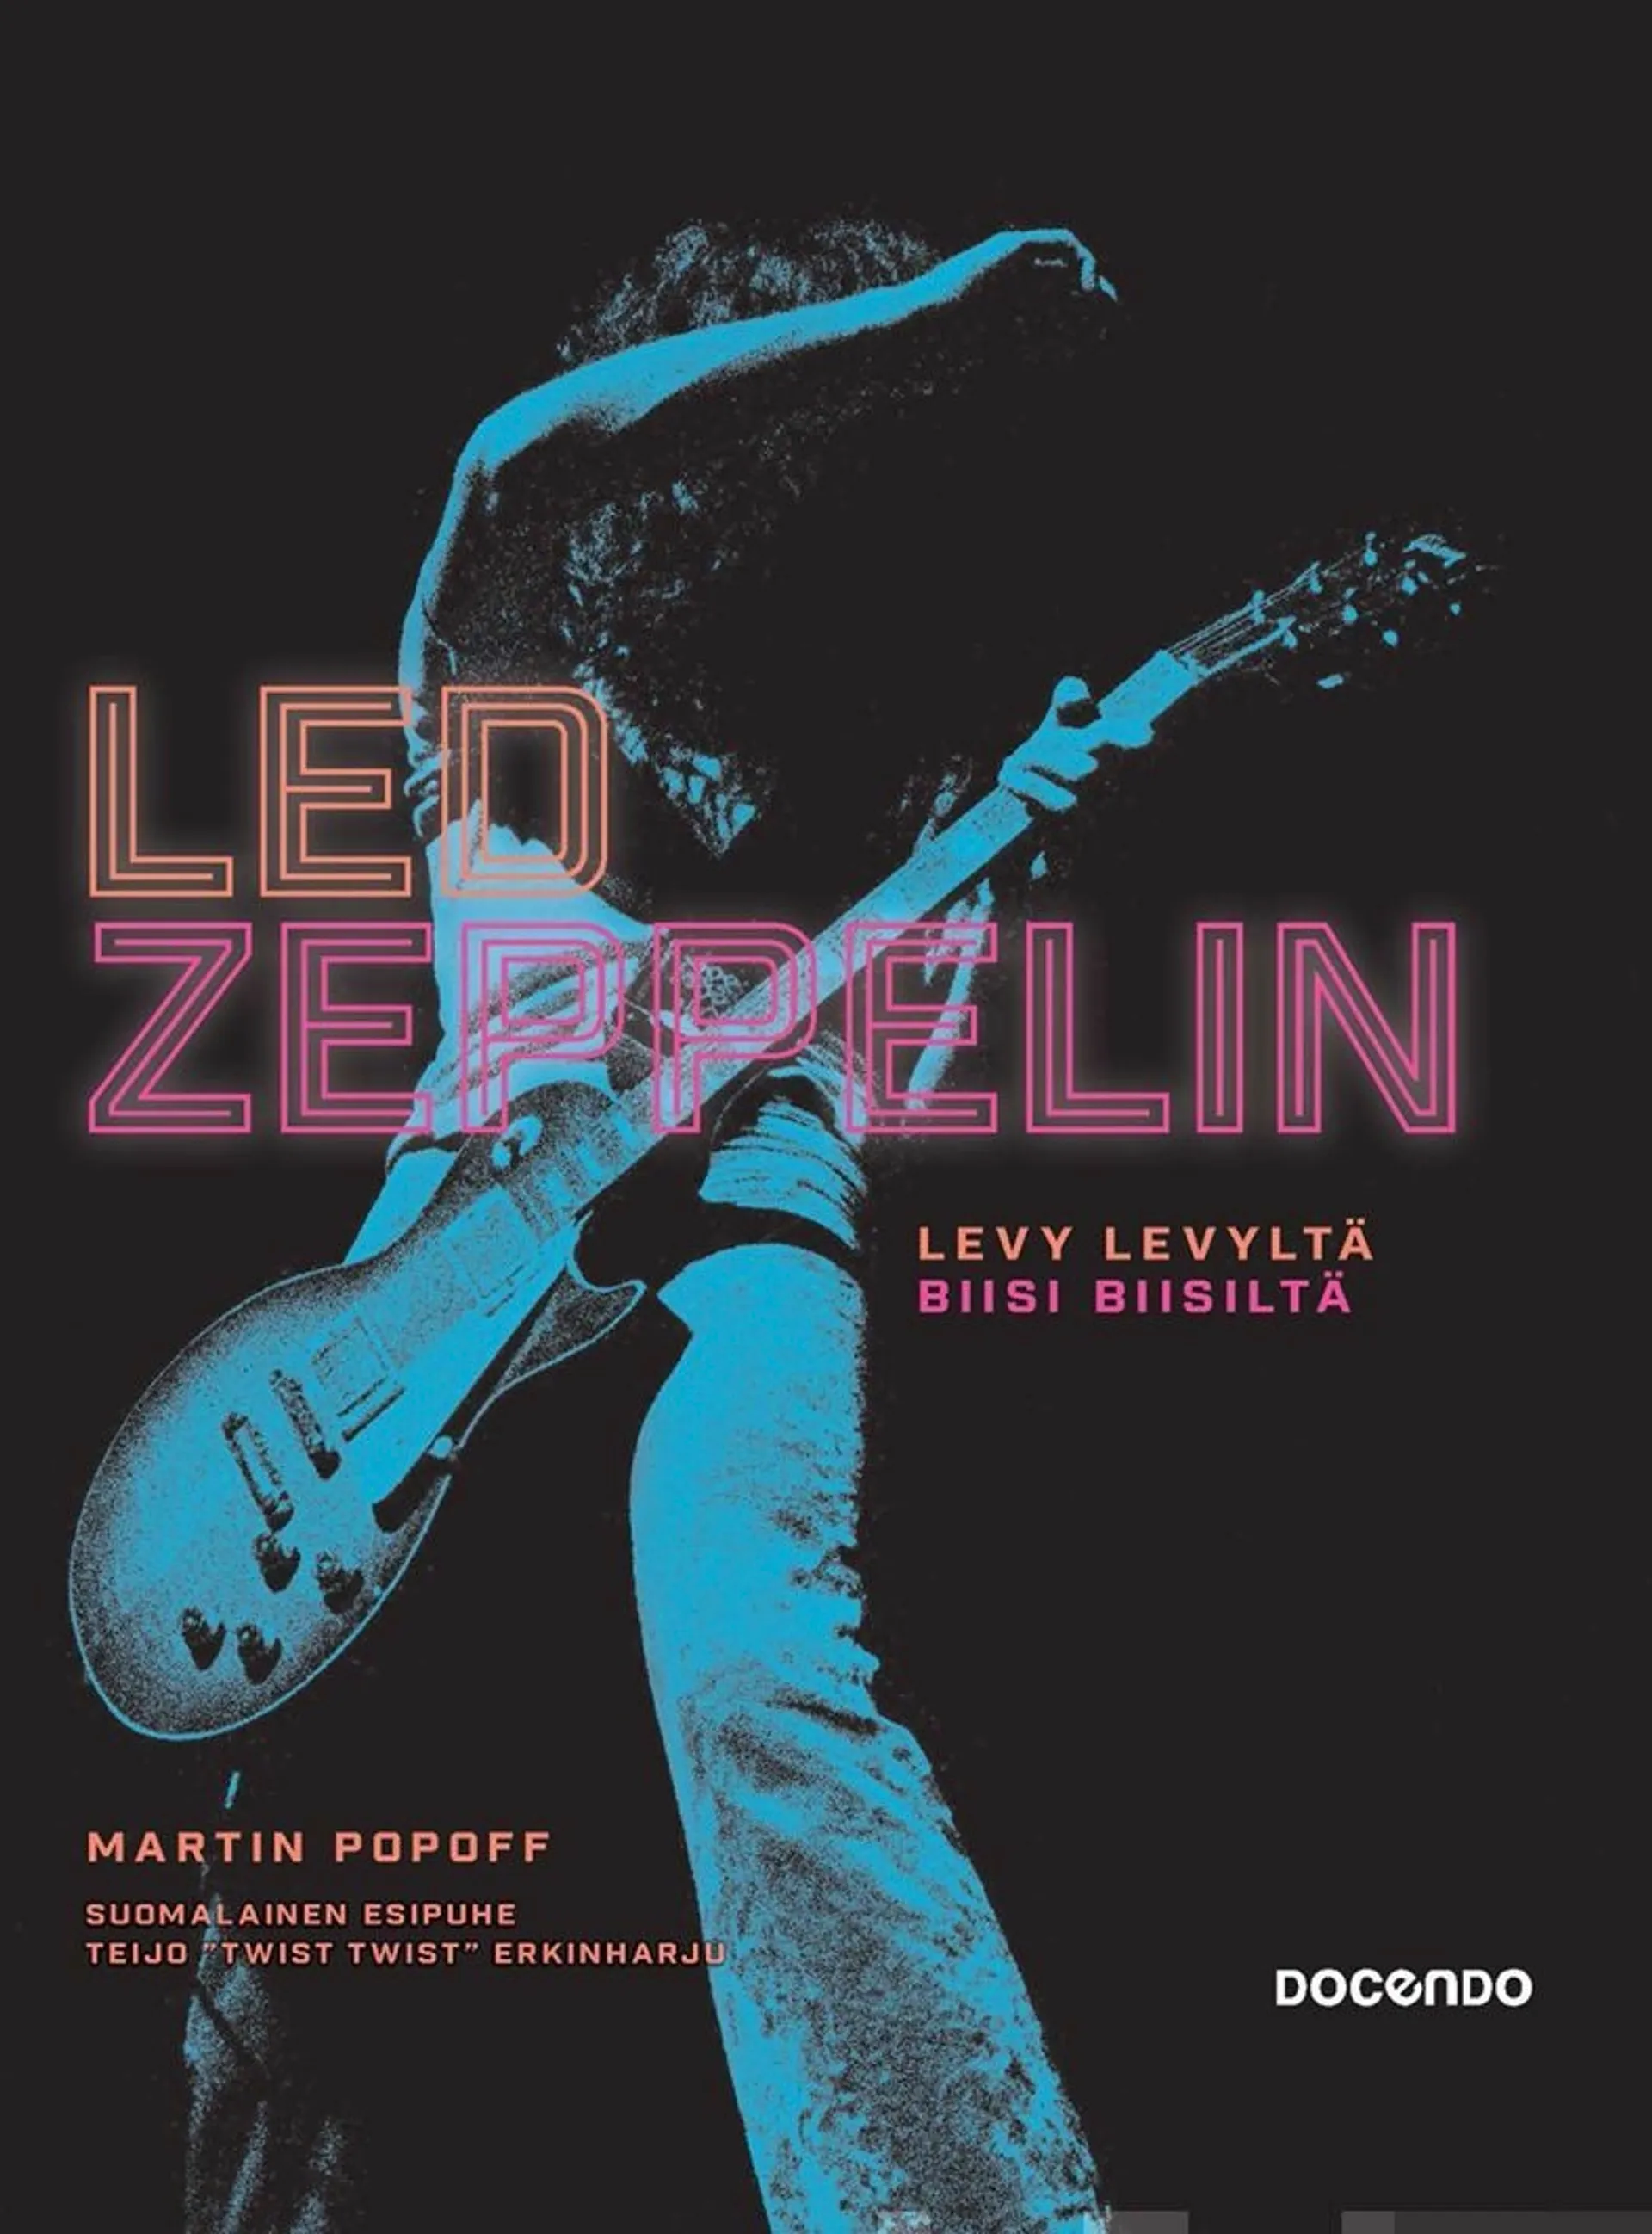 Popoff, Led Zeppelin - Levy levyltä, biisi biisiltä